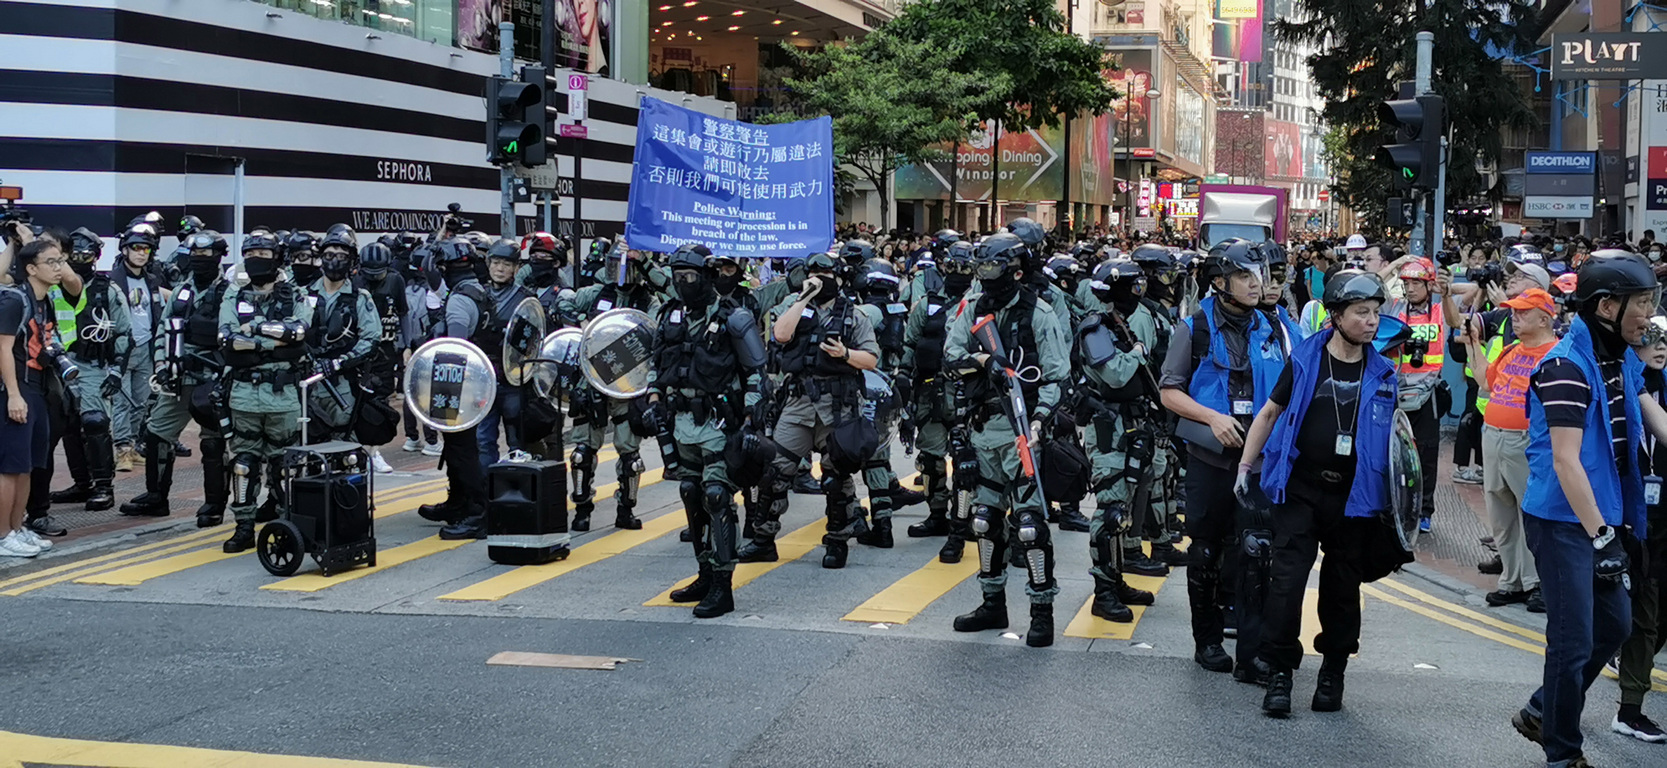 香港區議會選舉能否如期登場 官員稱有但書 | 芋傳媒 TaroNews